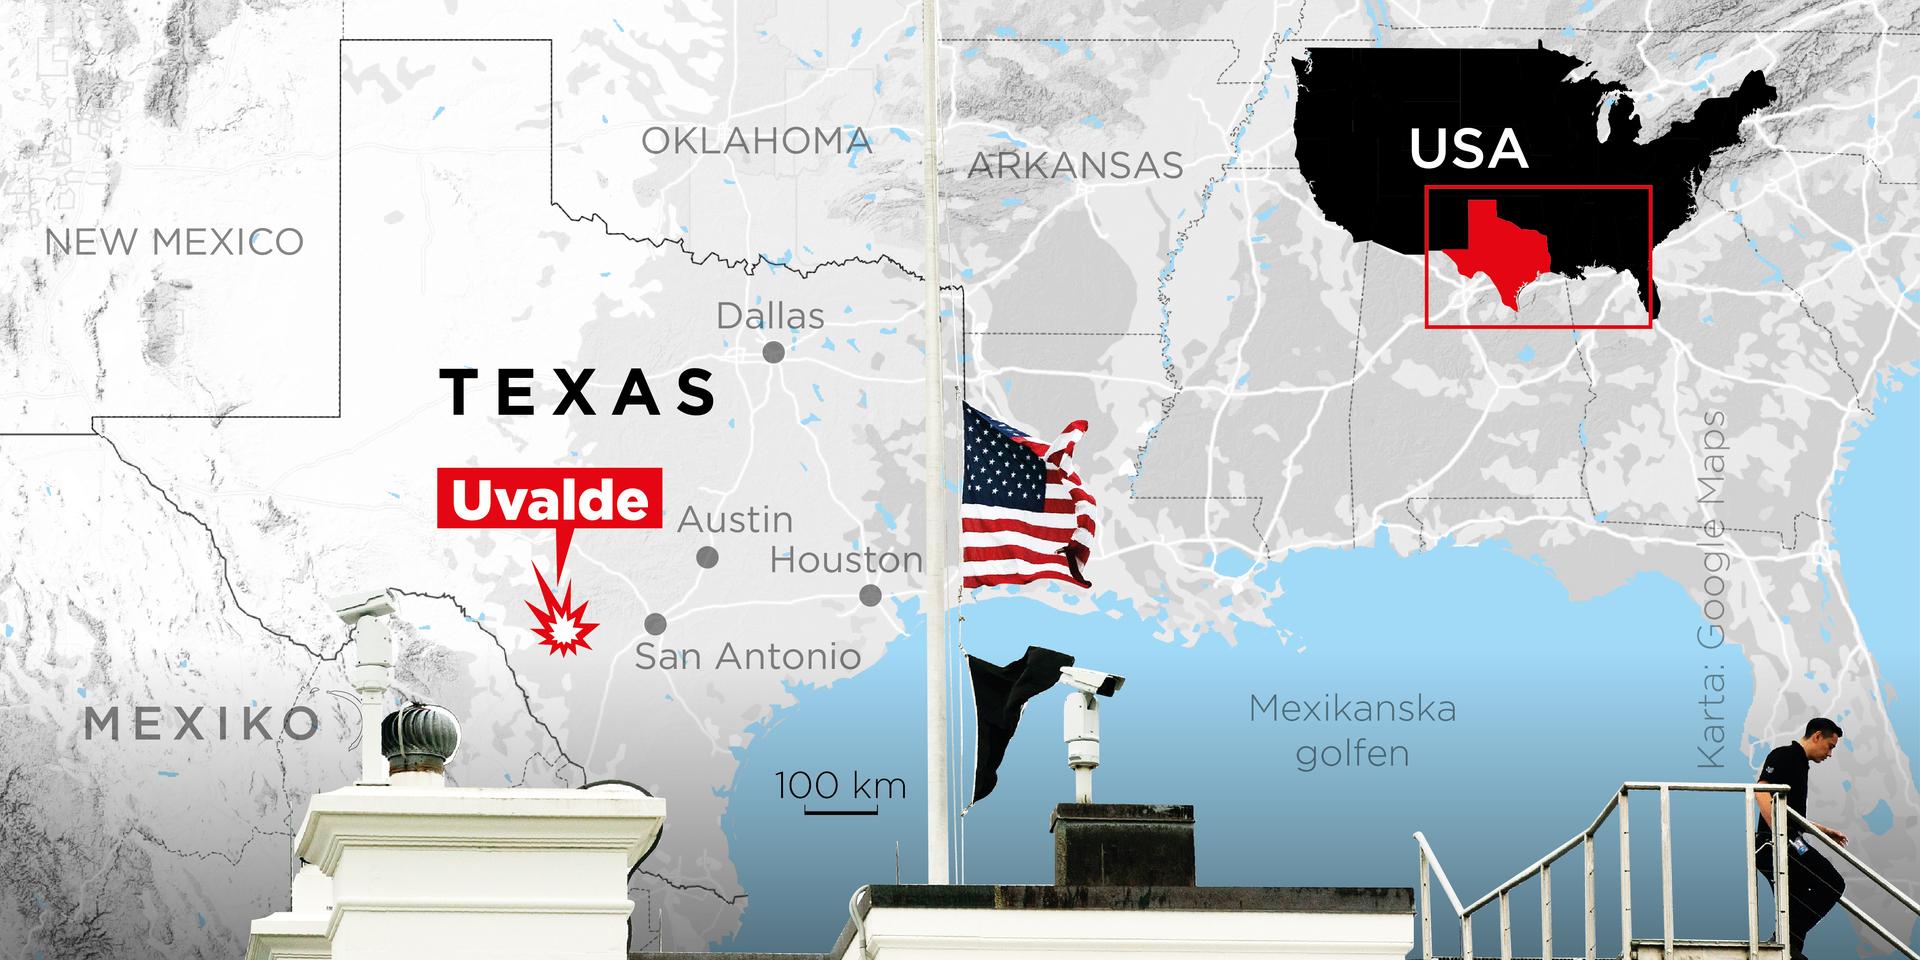 Över 20 personer har skjutits till döds i Uvalde i Texas.